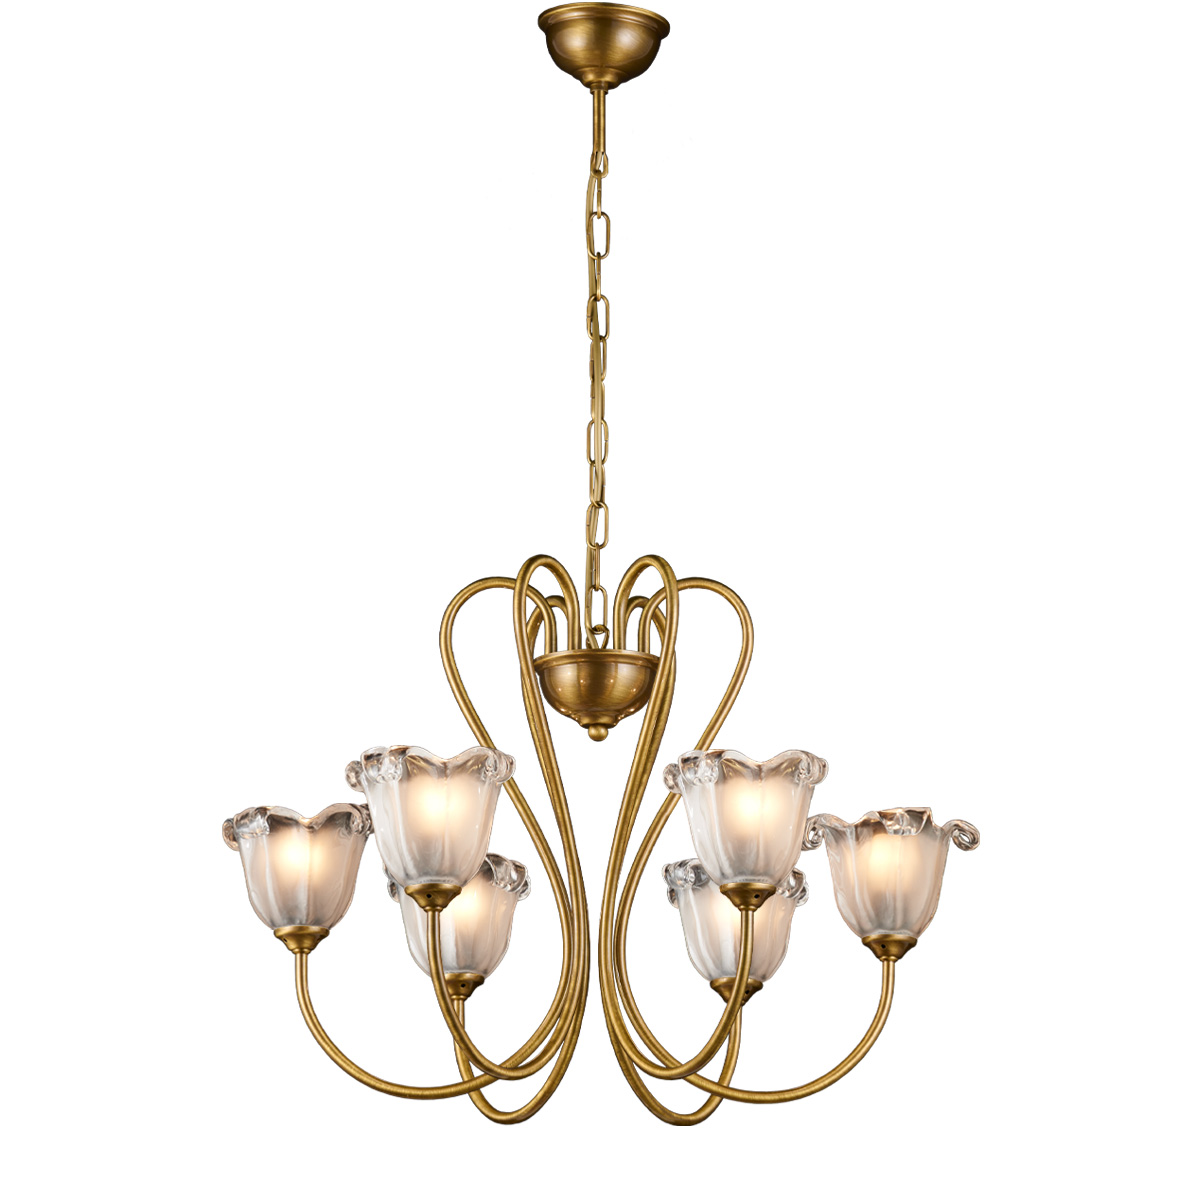 Μπρούντζινο πολύφωτο με κρύσταλλα Μουράνο ΝΑΞΟΣ-1 bronze chandelier with Murano crystals